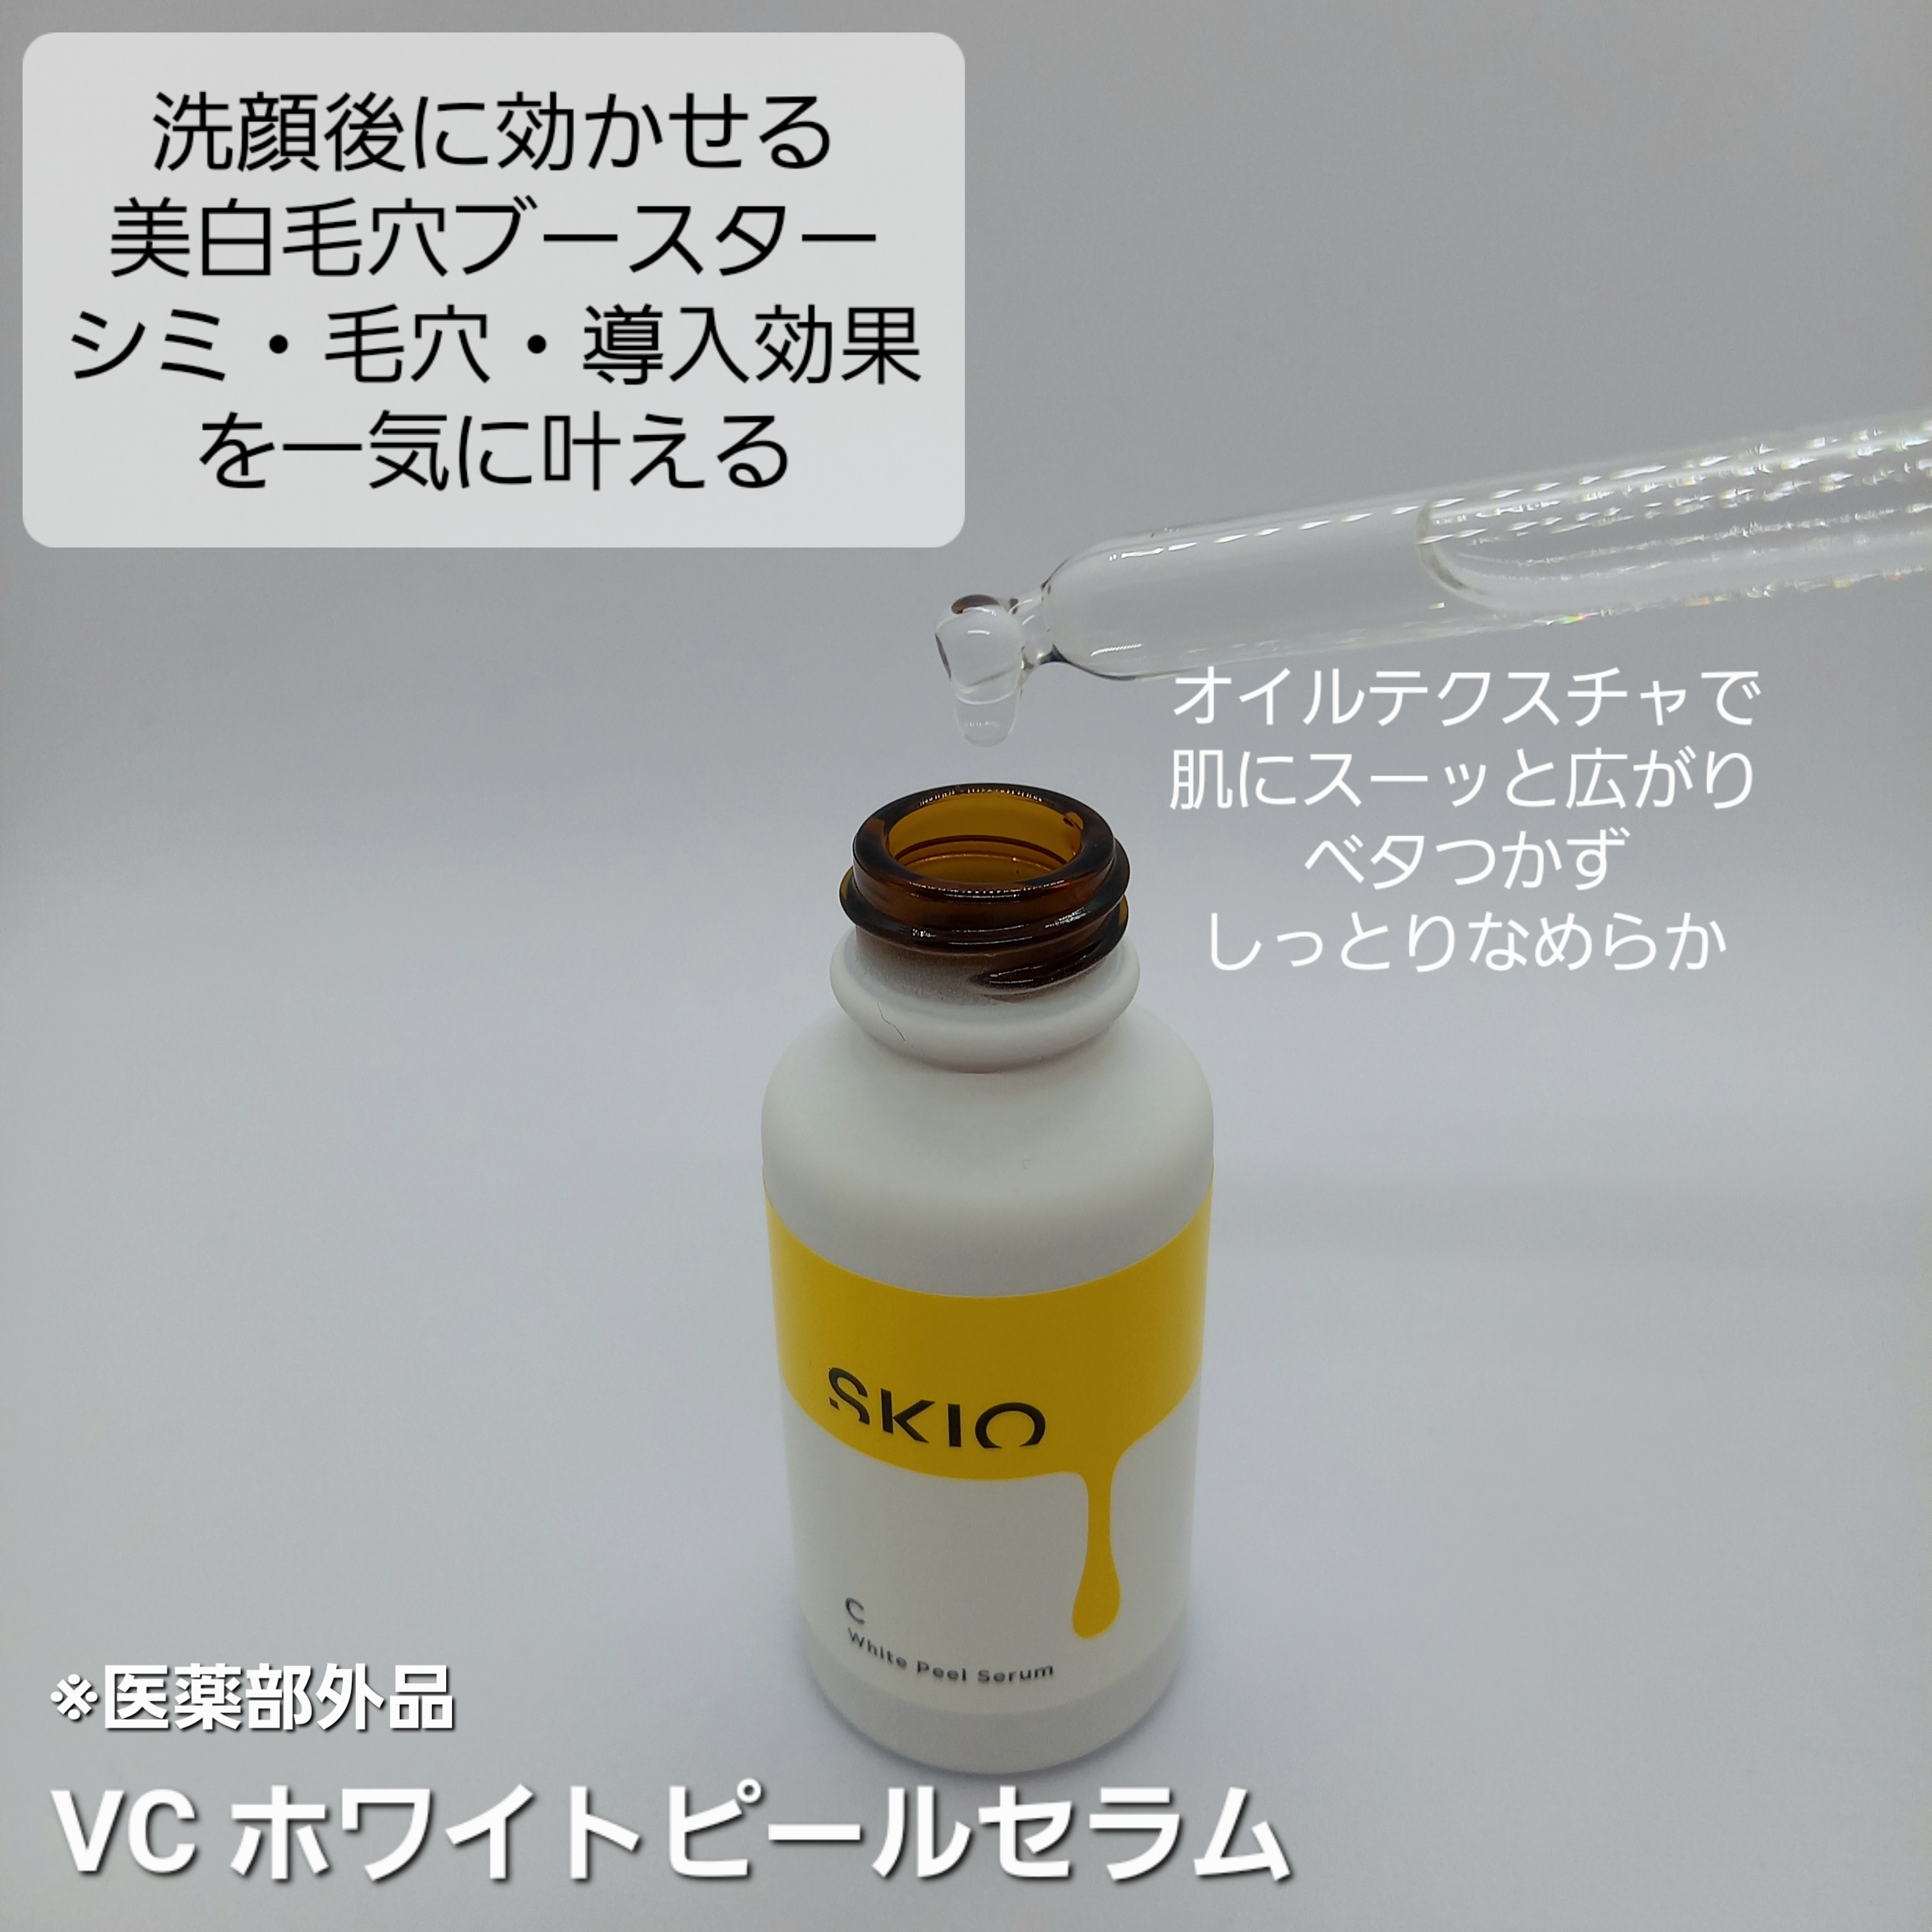 ロート製薬 SKIO VC スキオ3セット - 保湿ジェル